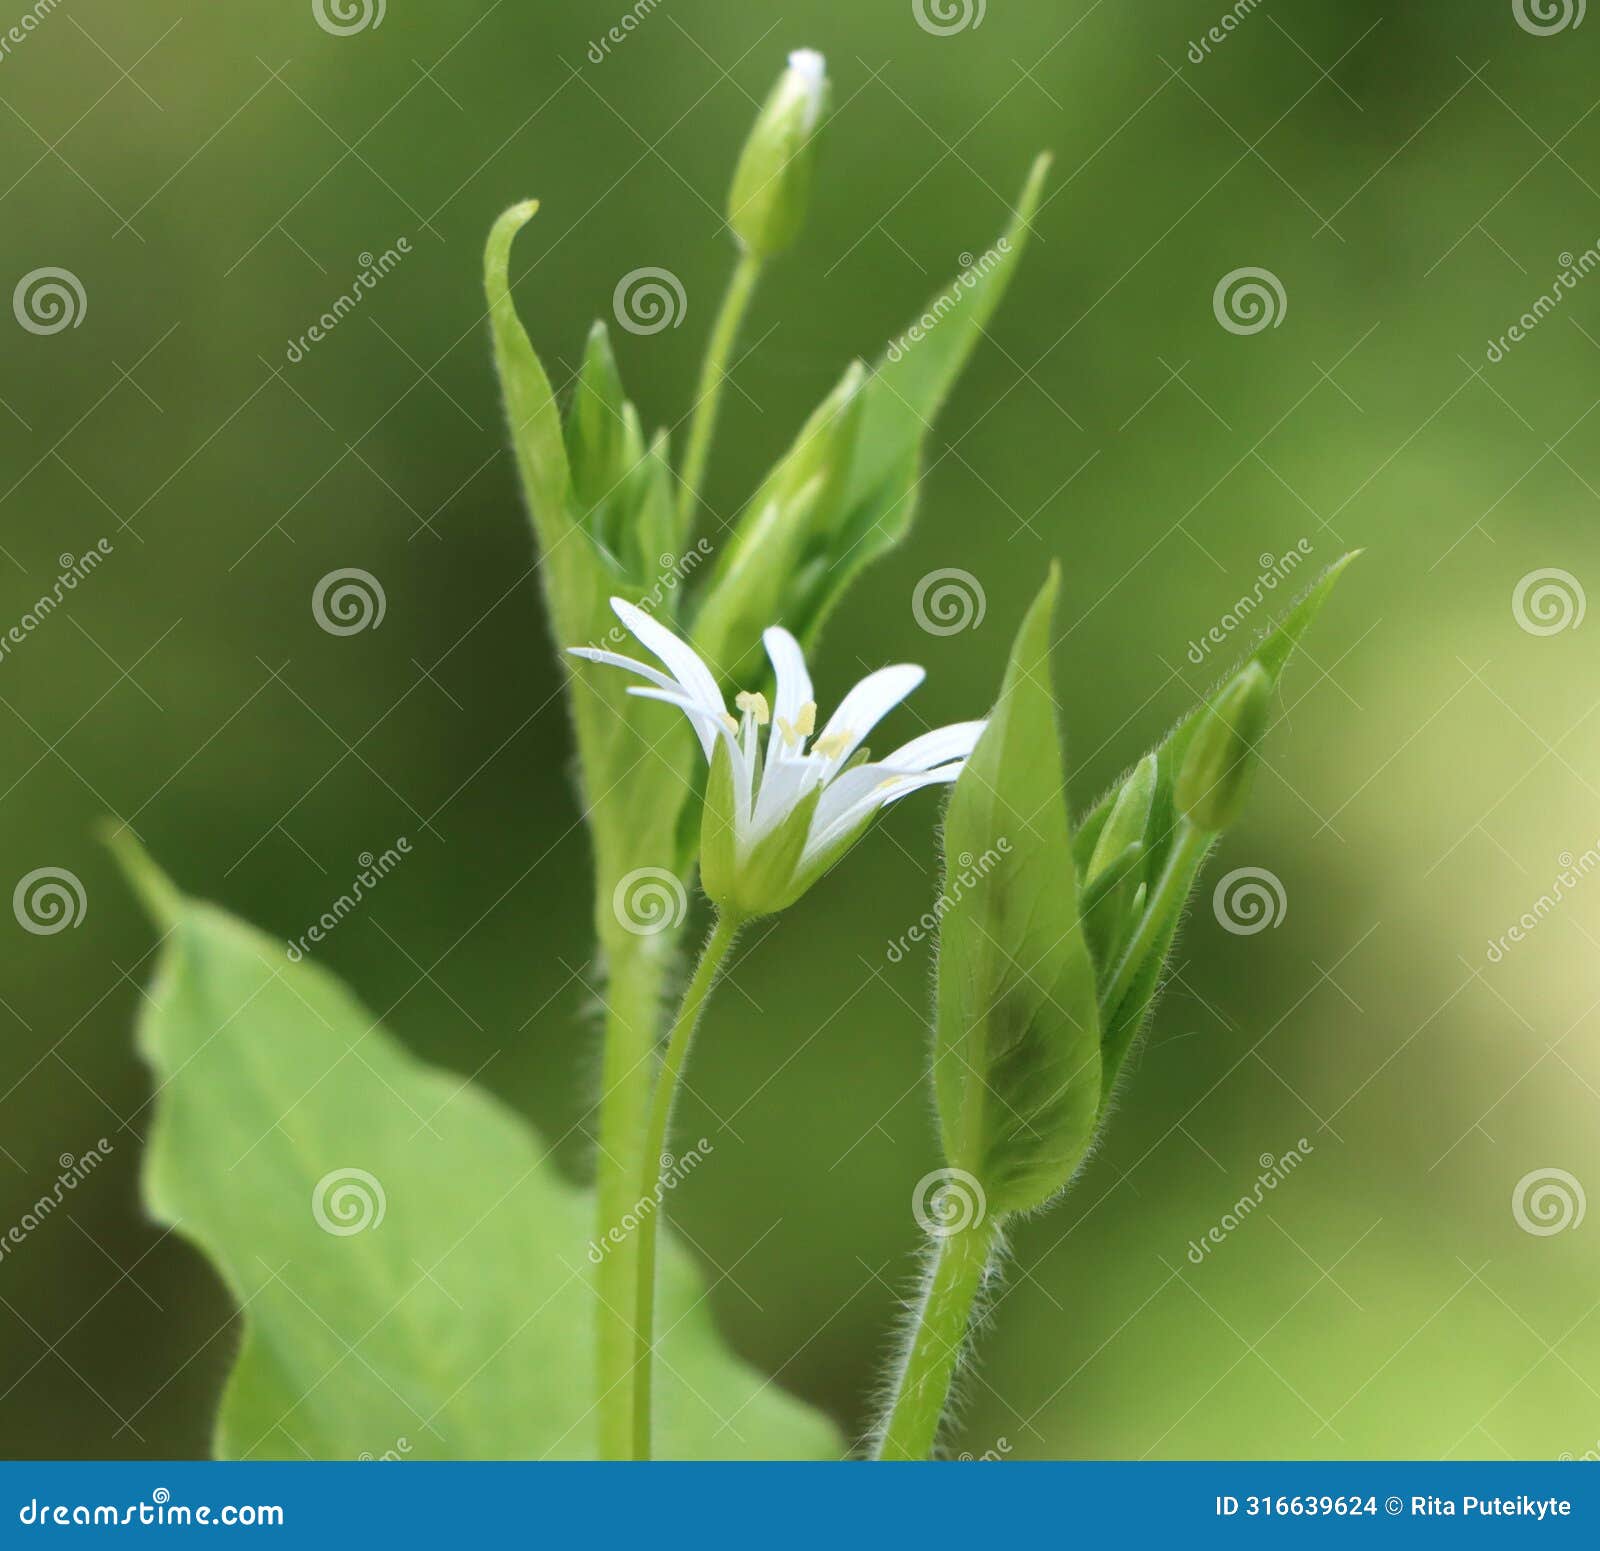 stellaria nemorum (wood stitchwort)